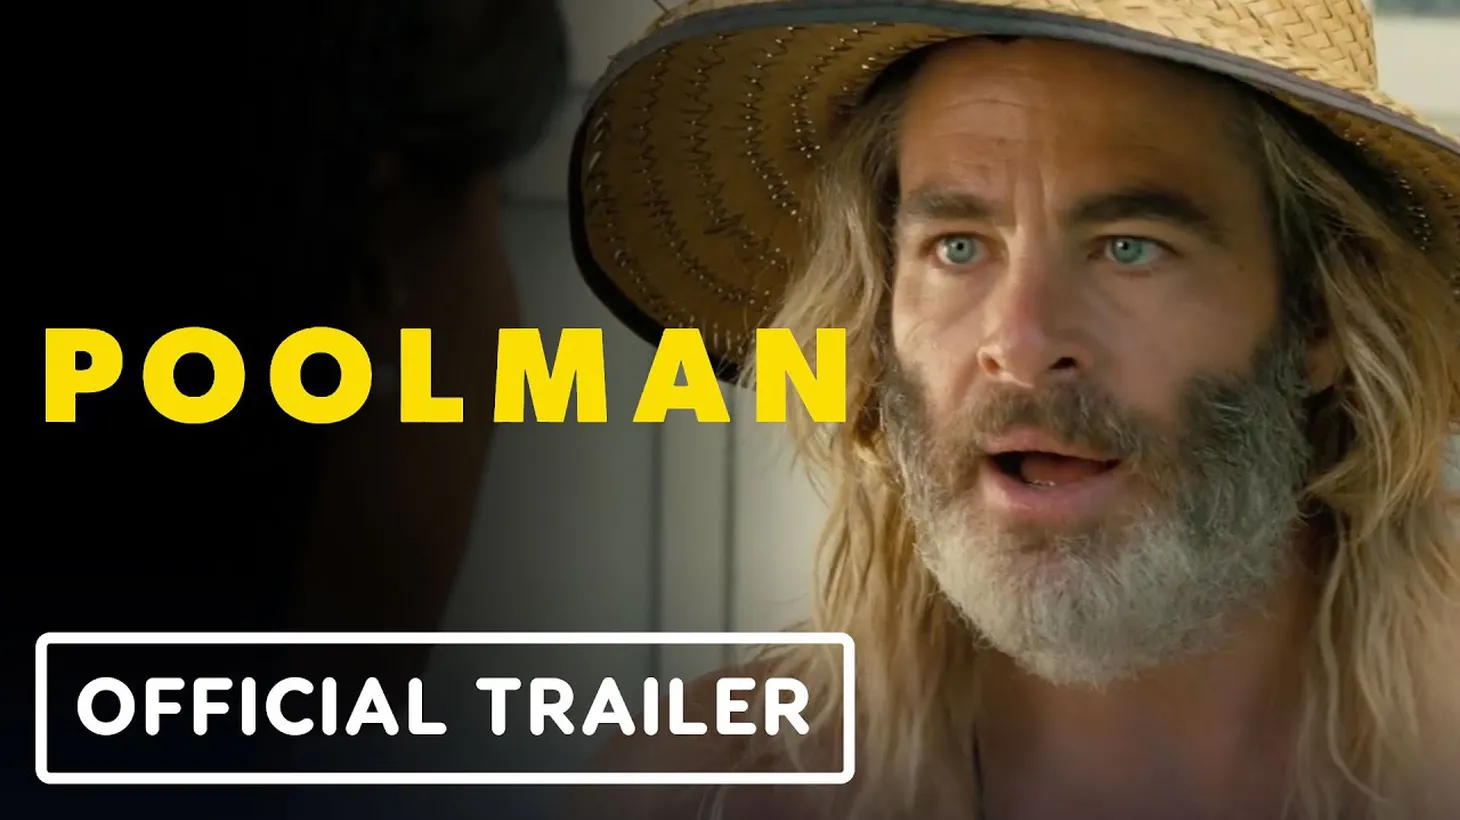 Trailer for POOLMAN.